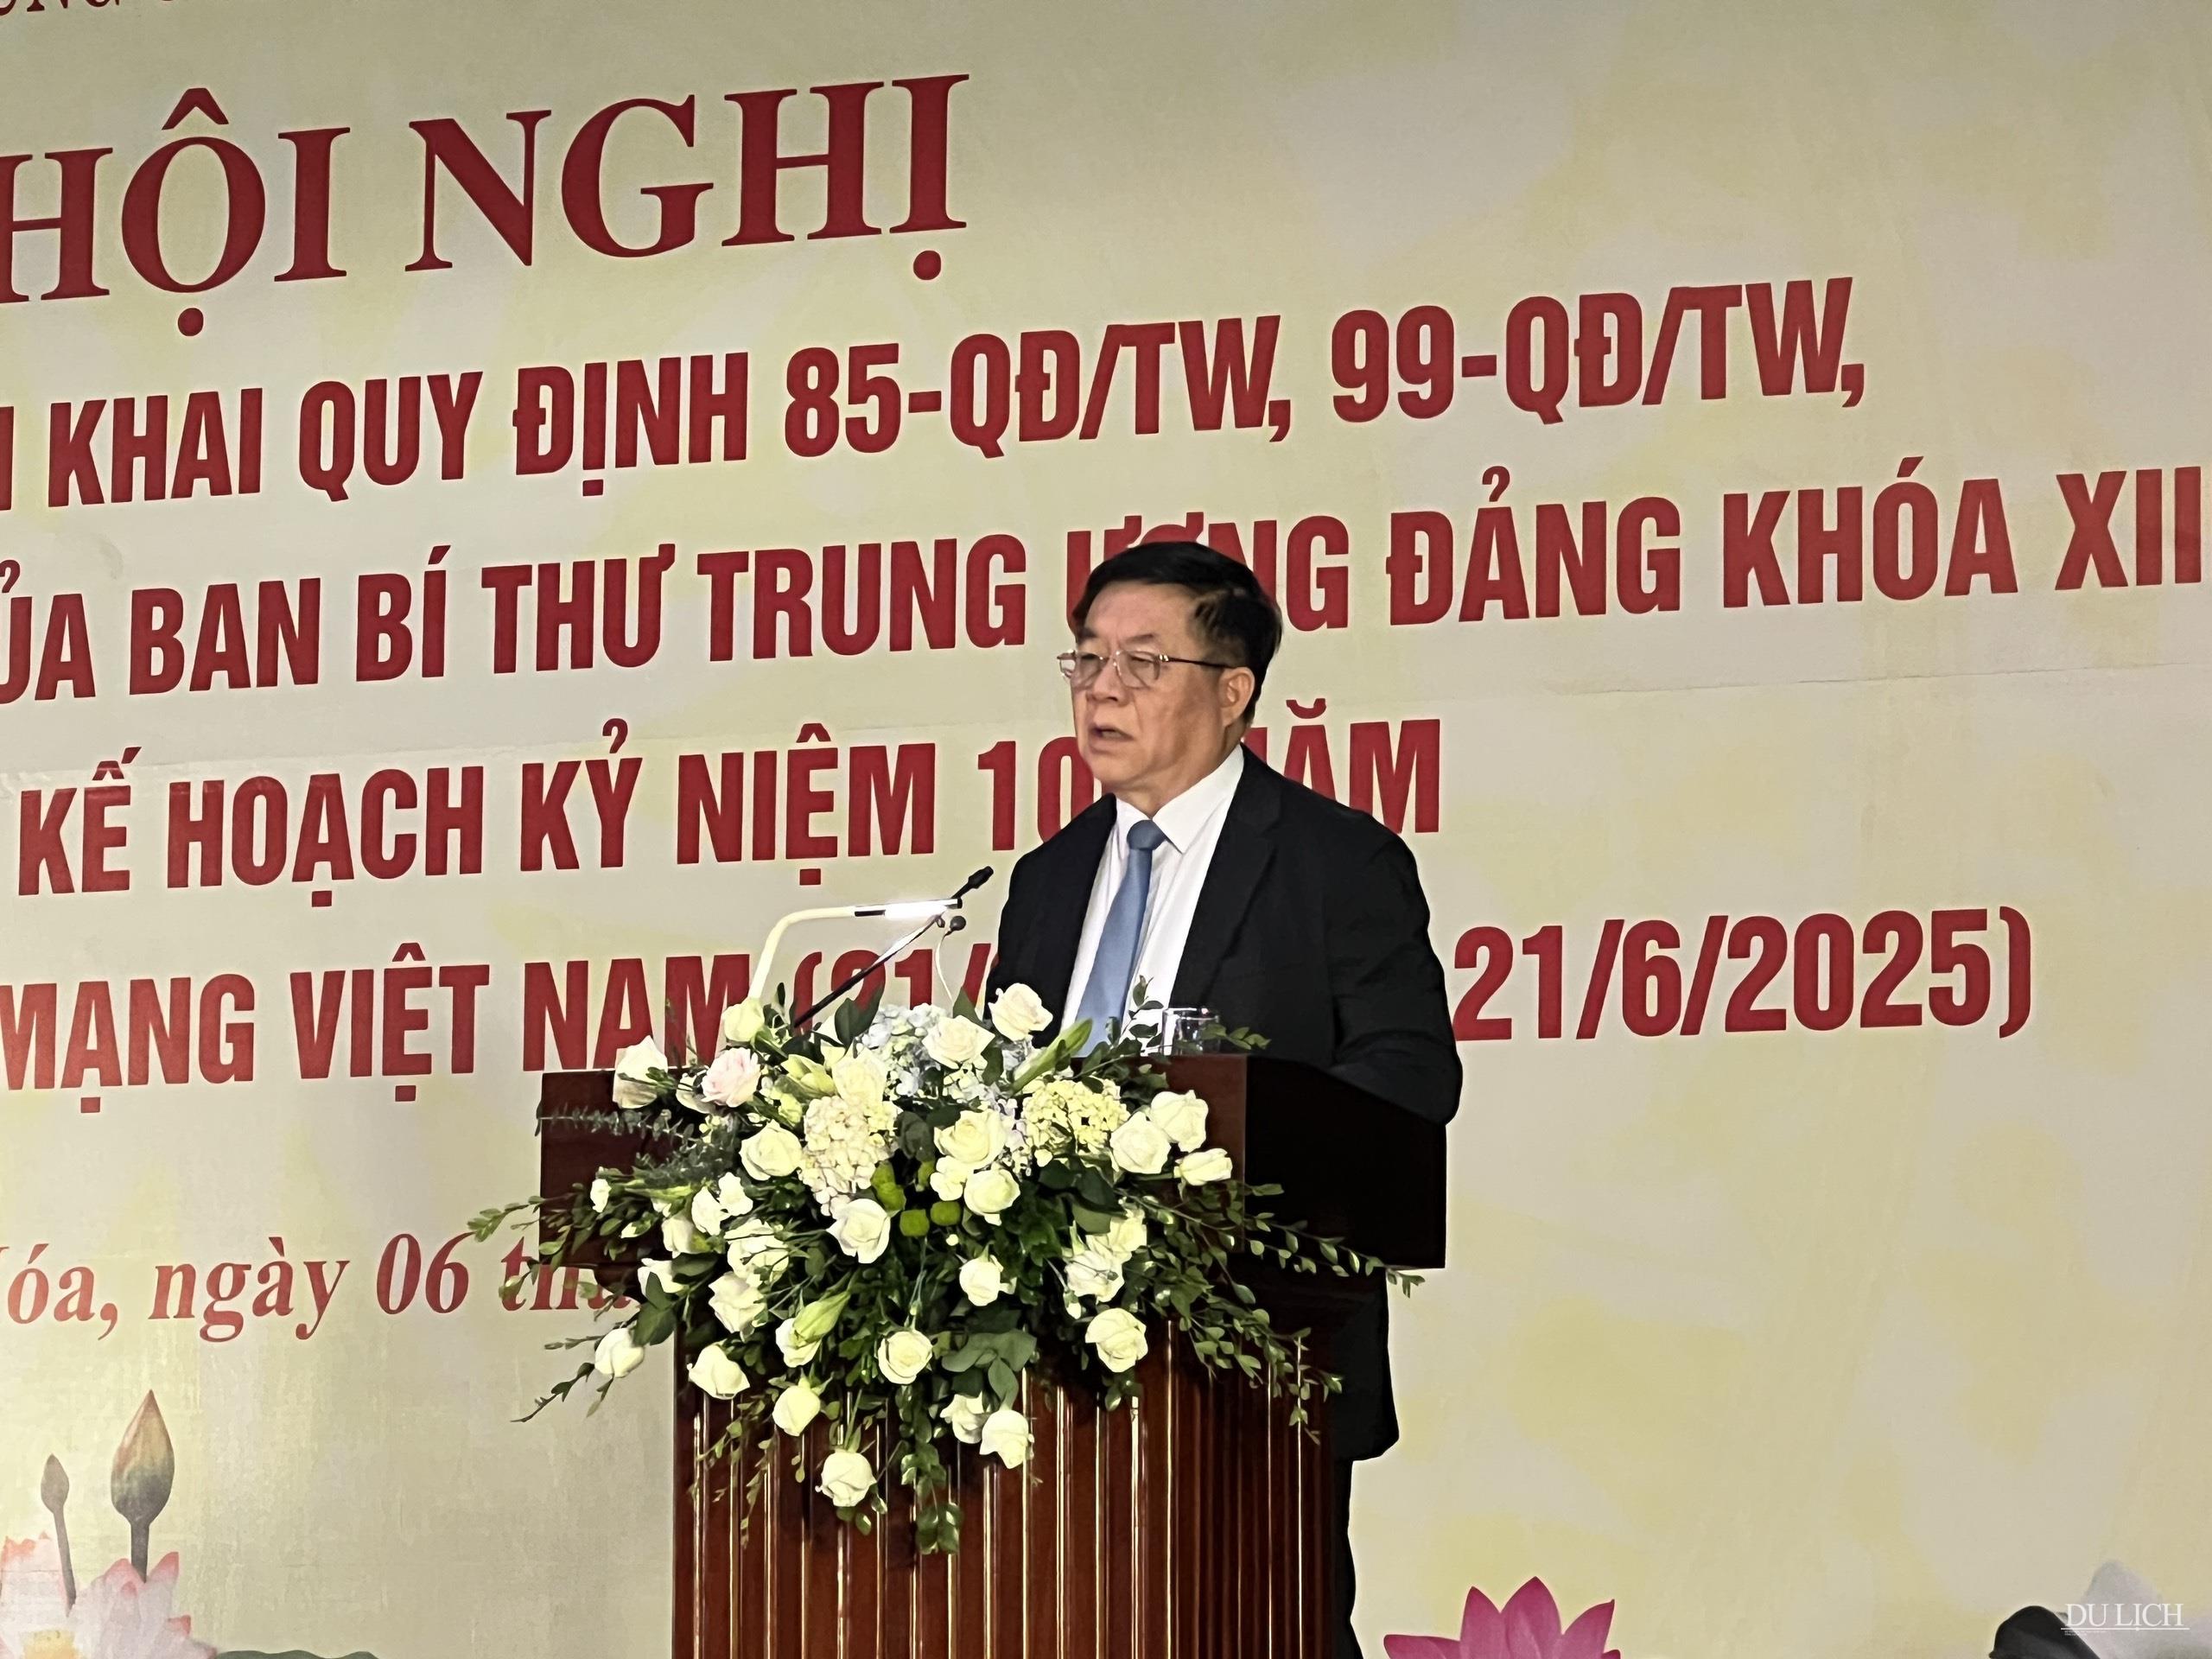 Đồng chí Nguyễn Trọng Nghĩa, Bí thư Trung ương Đảng, Trưởng Ban Tuyên giáo Trung ương phát biểu chỉ đạo, kết luận hội nghị